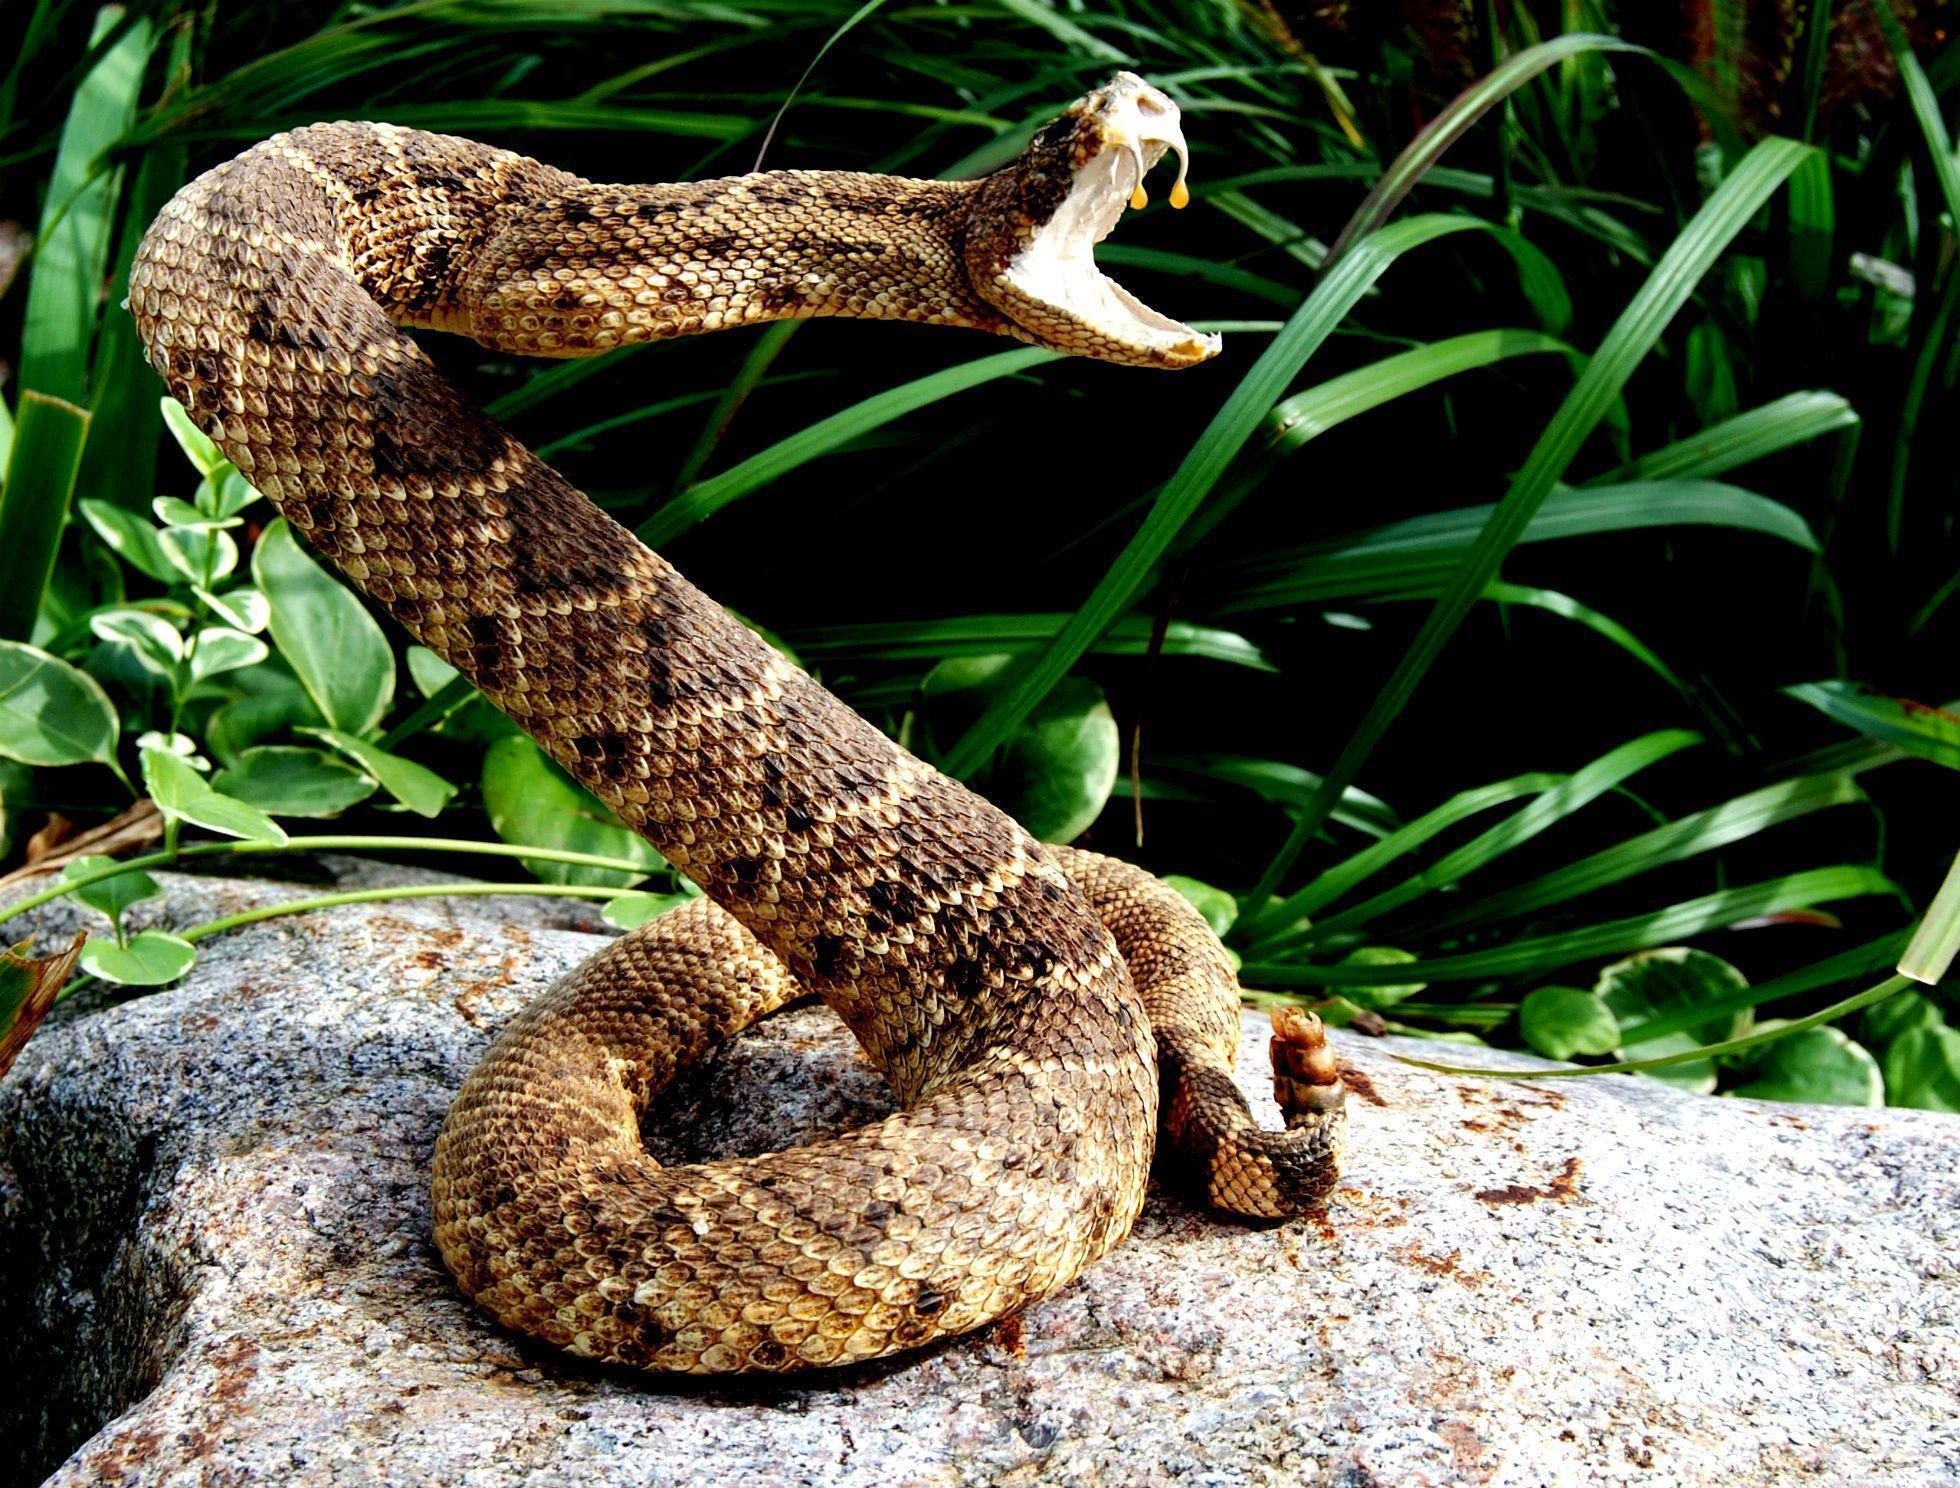 Snake reptile snakes predator rattlesnake ue wallpaperx1488